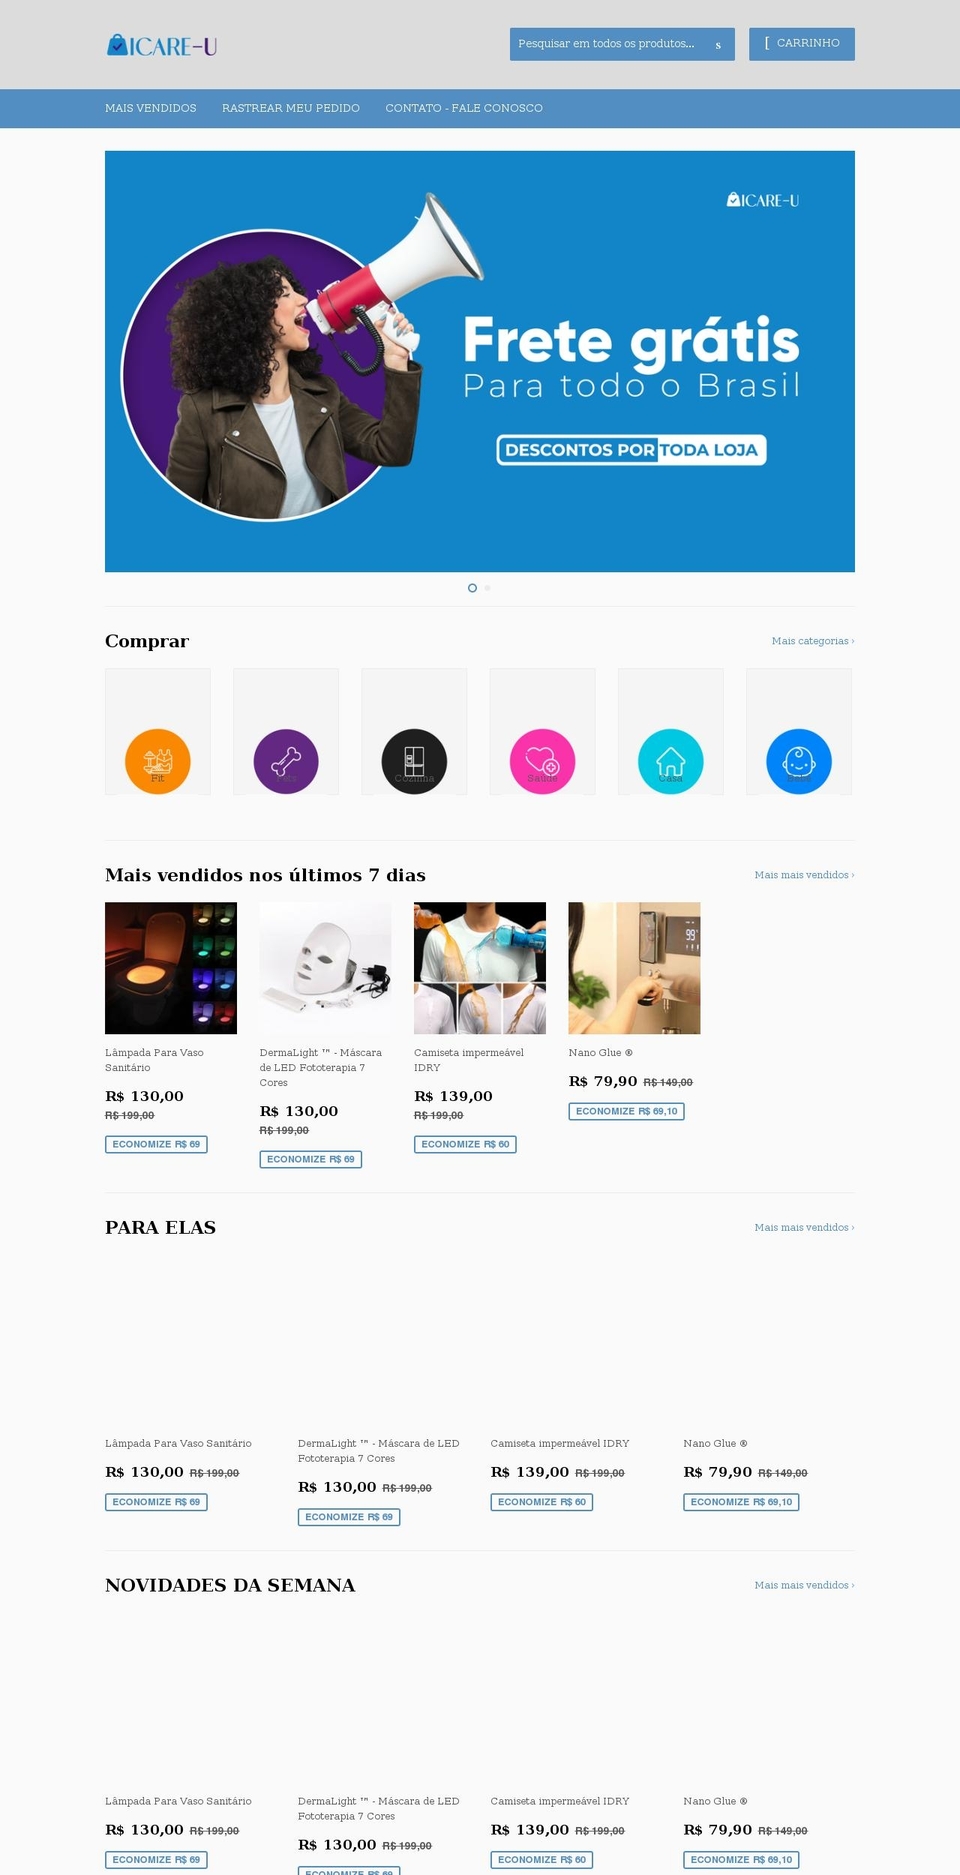 icare-u.com shopify website screenshot